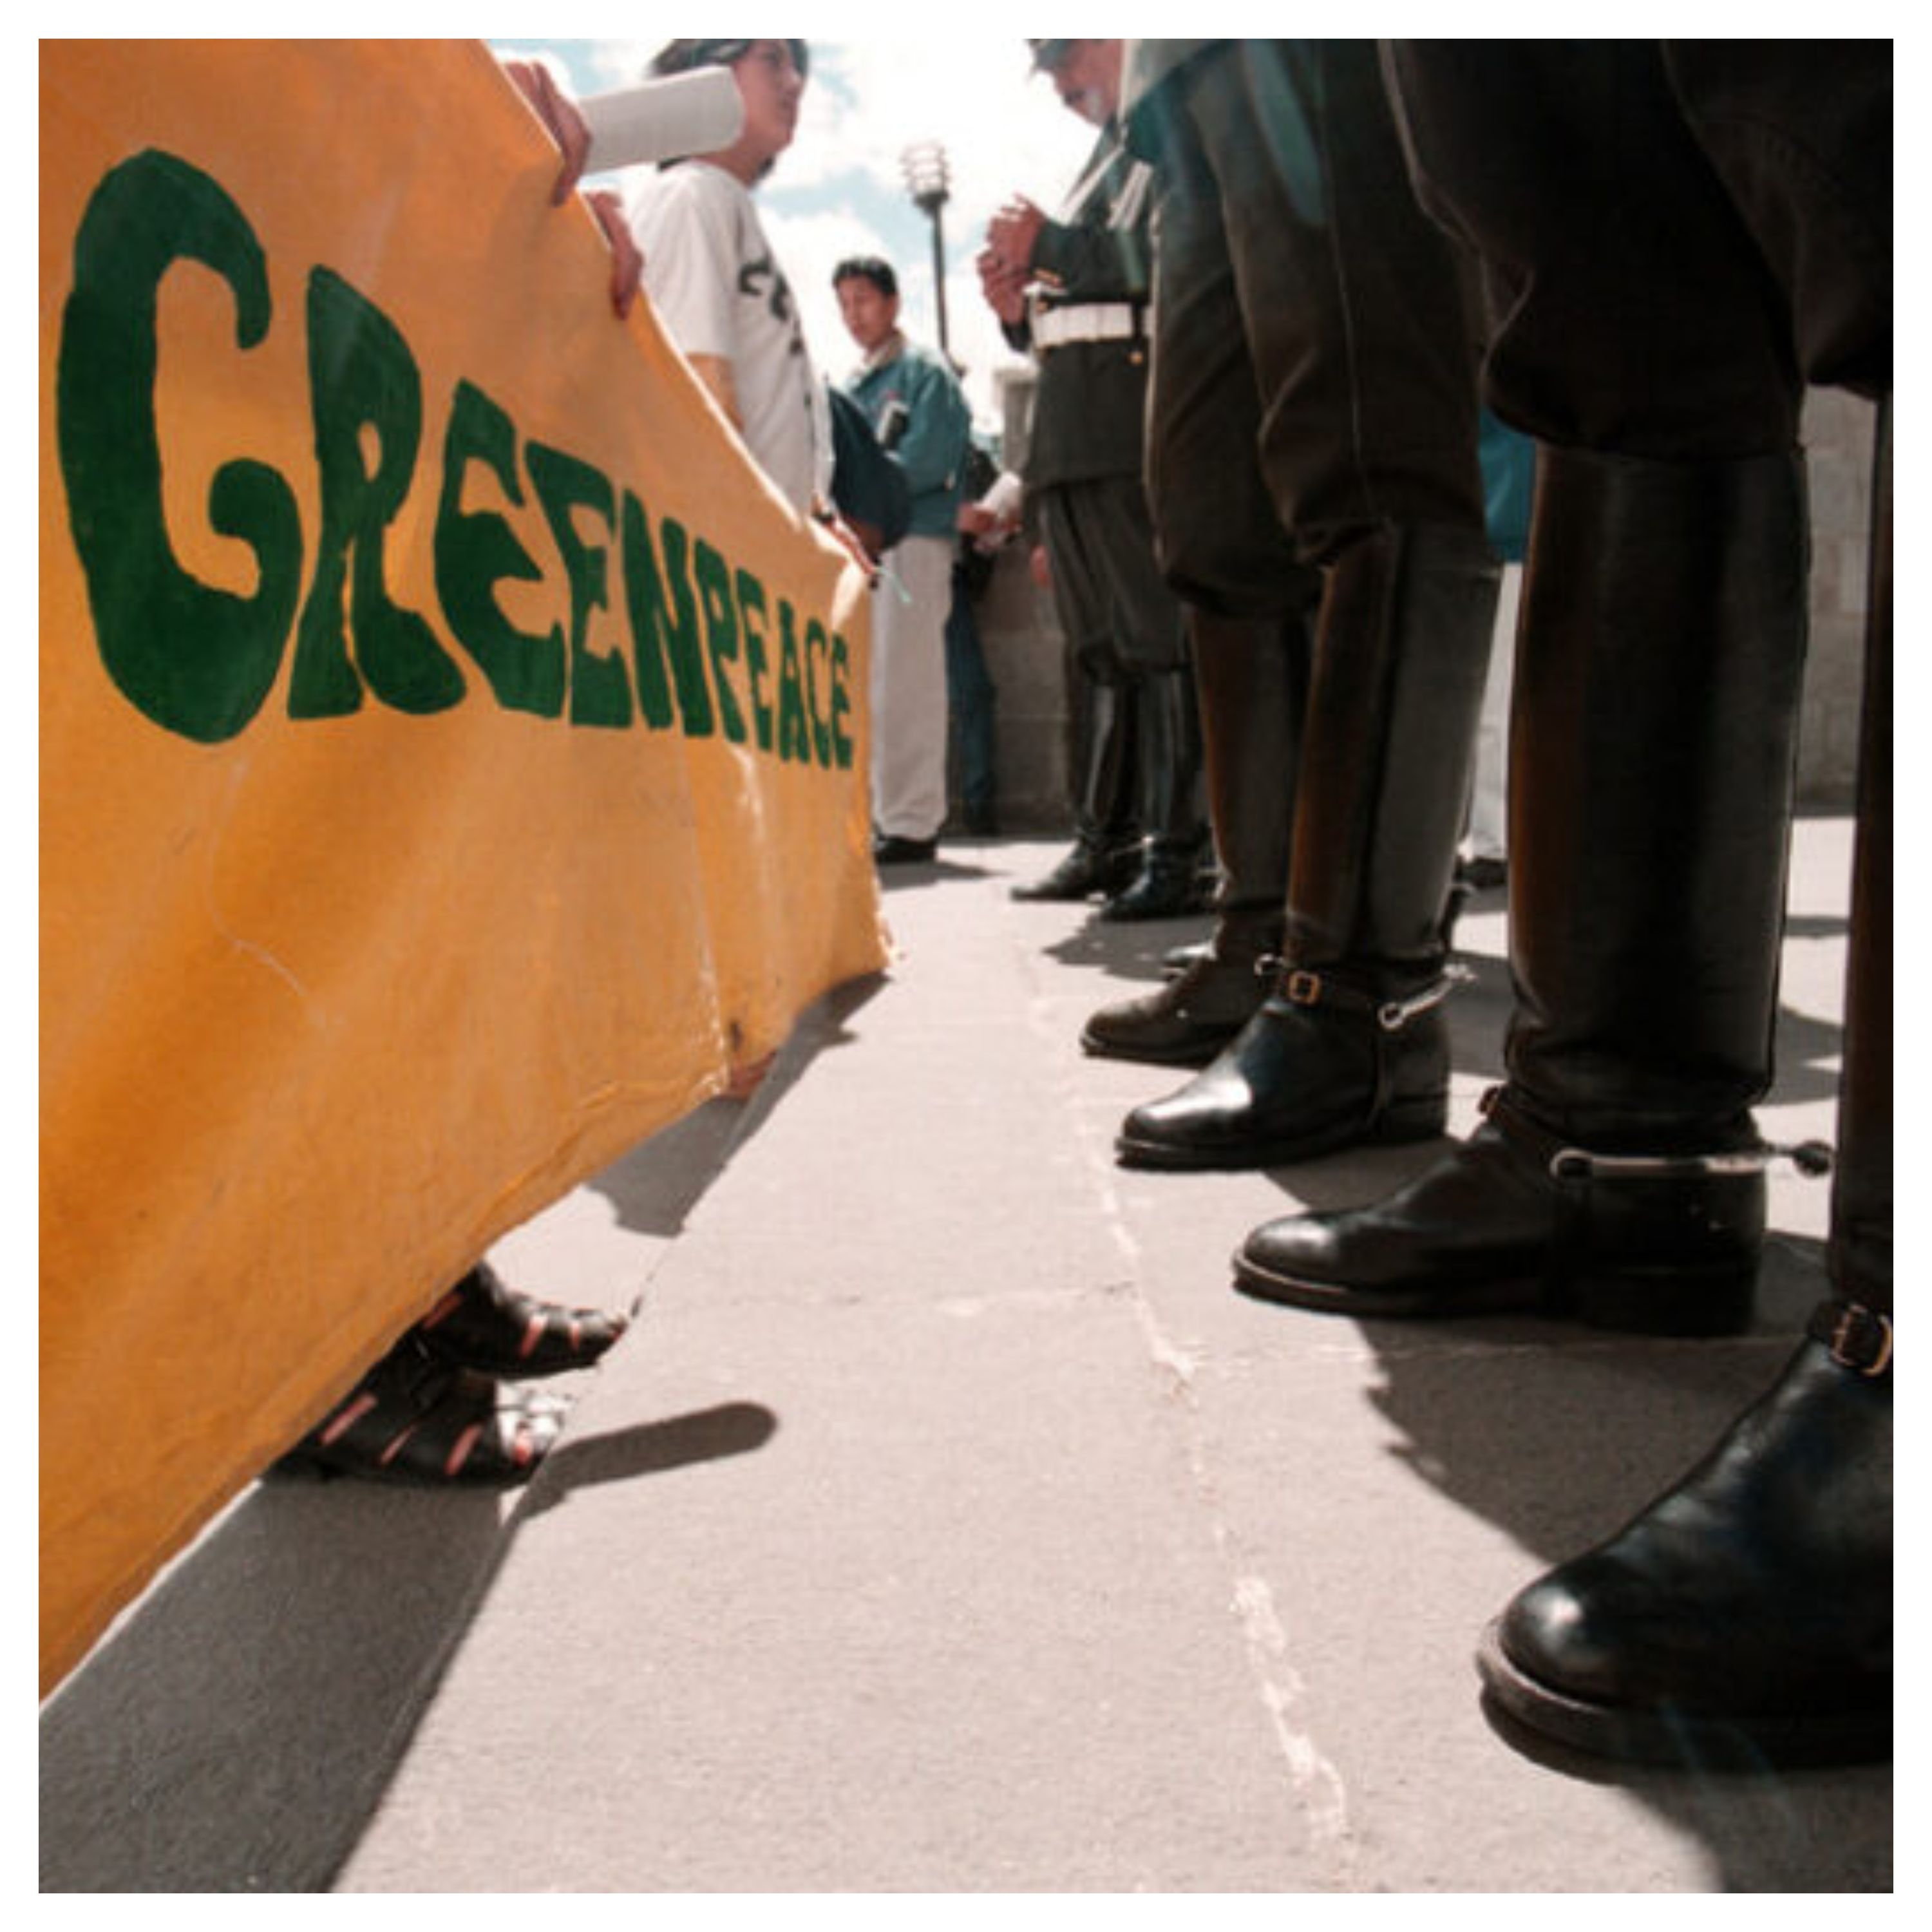 Banderole de Greenpeace lors d'une manifestation